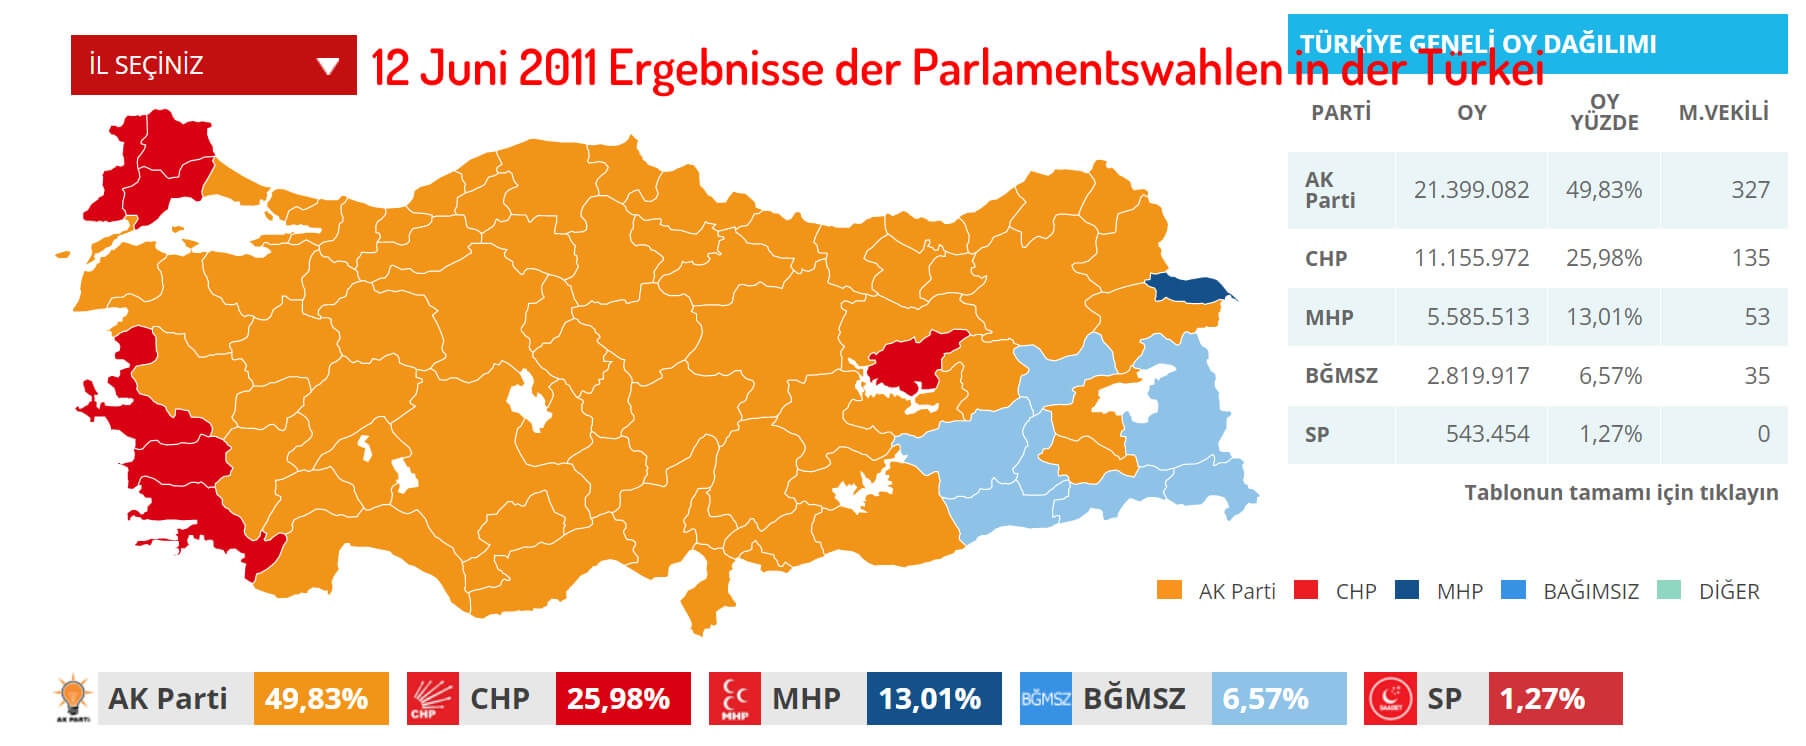 12 Juni 2011 Ergebnisse der Parlamentswahlen in der Türkei